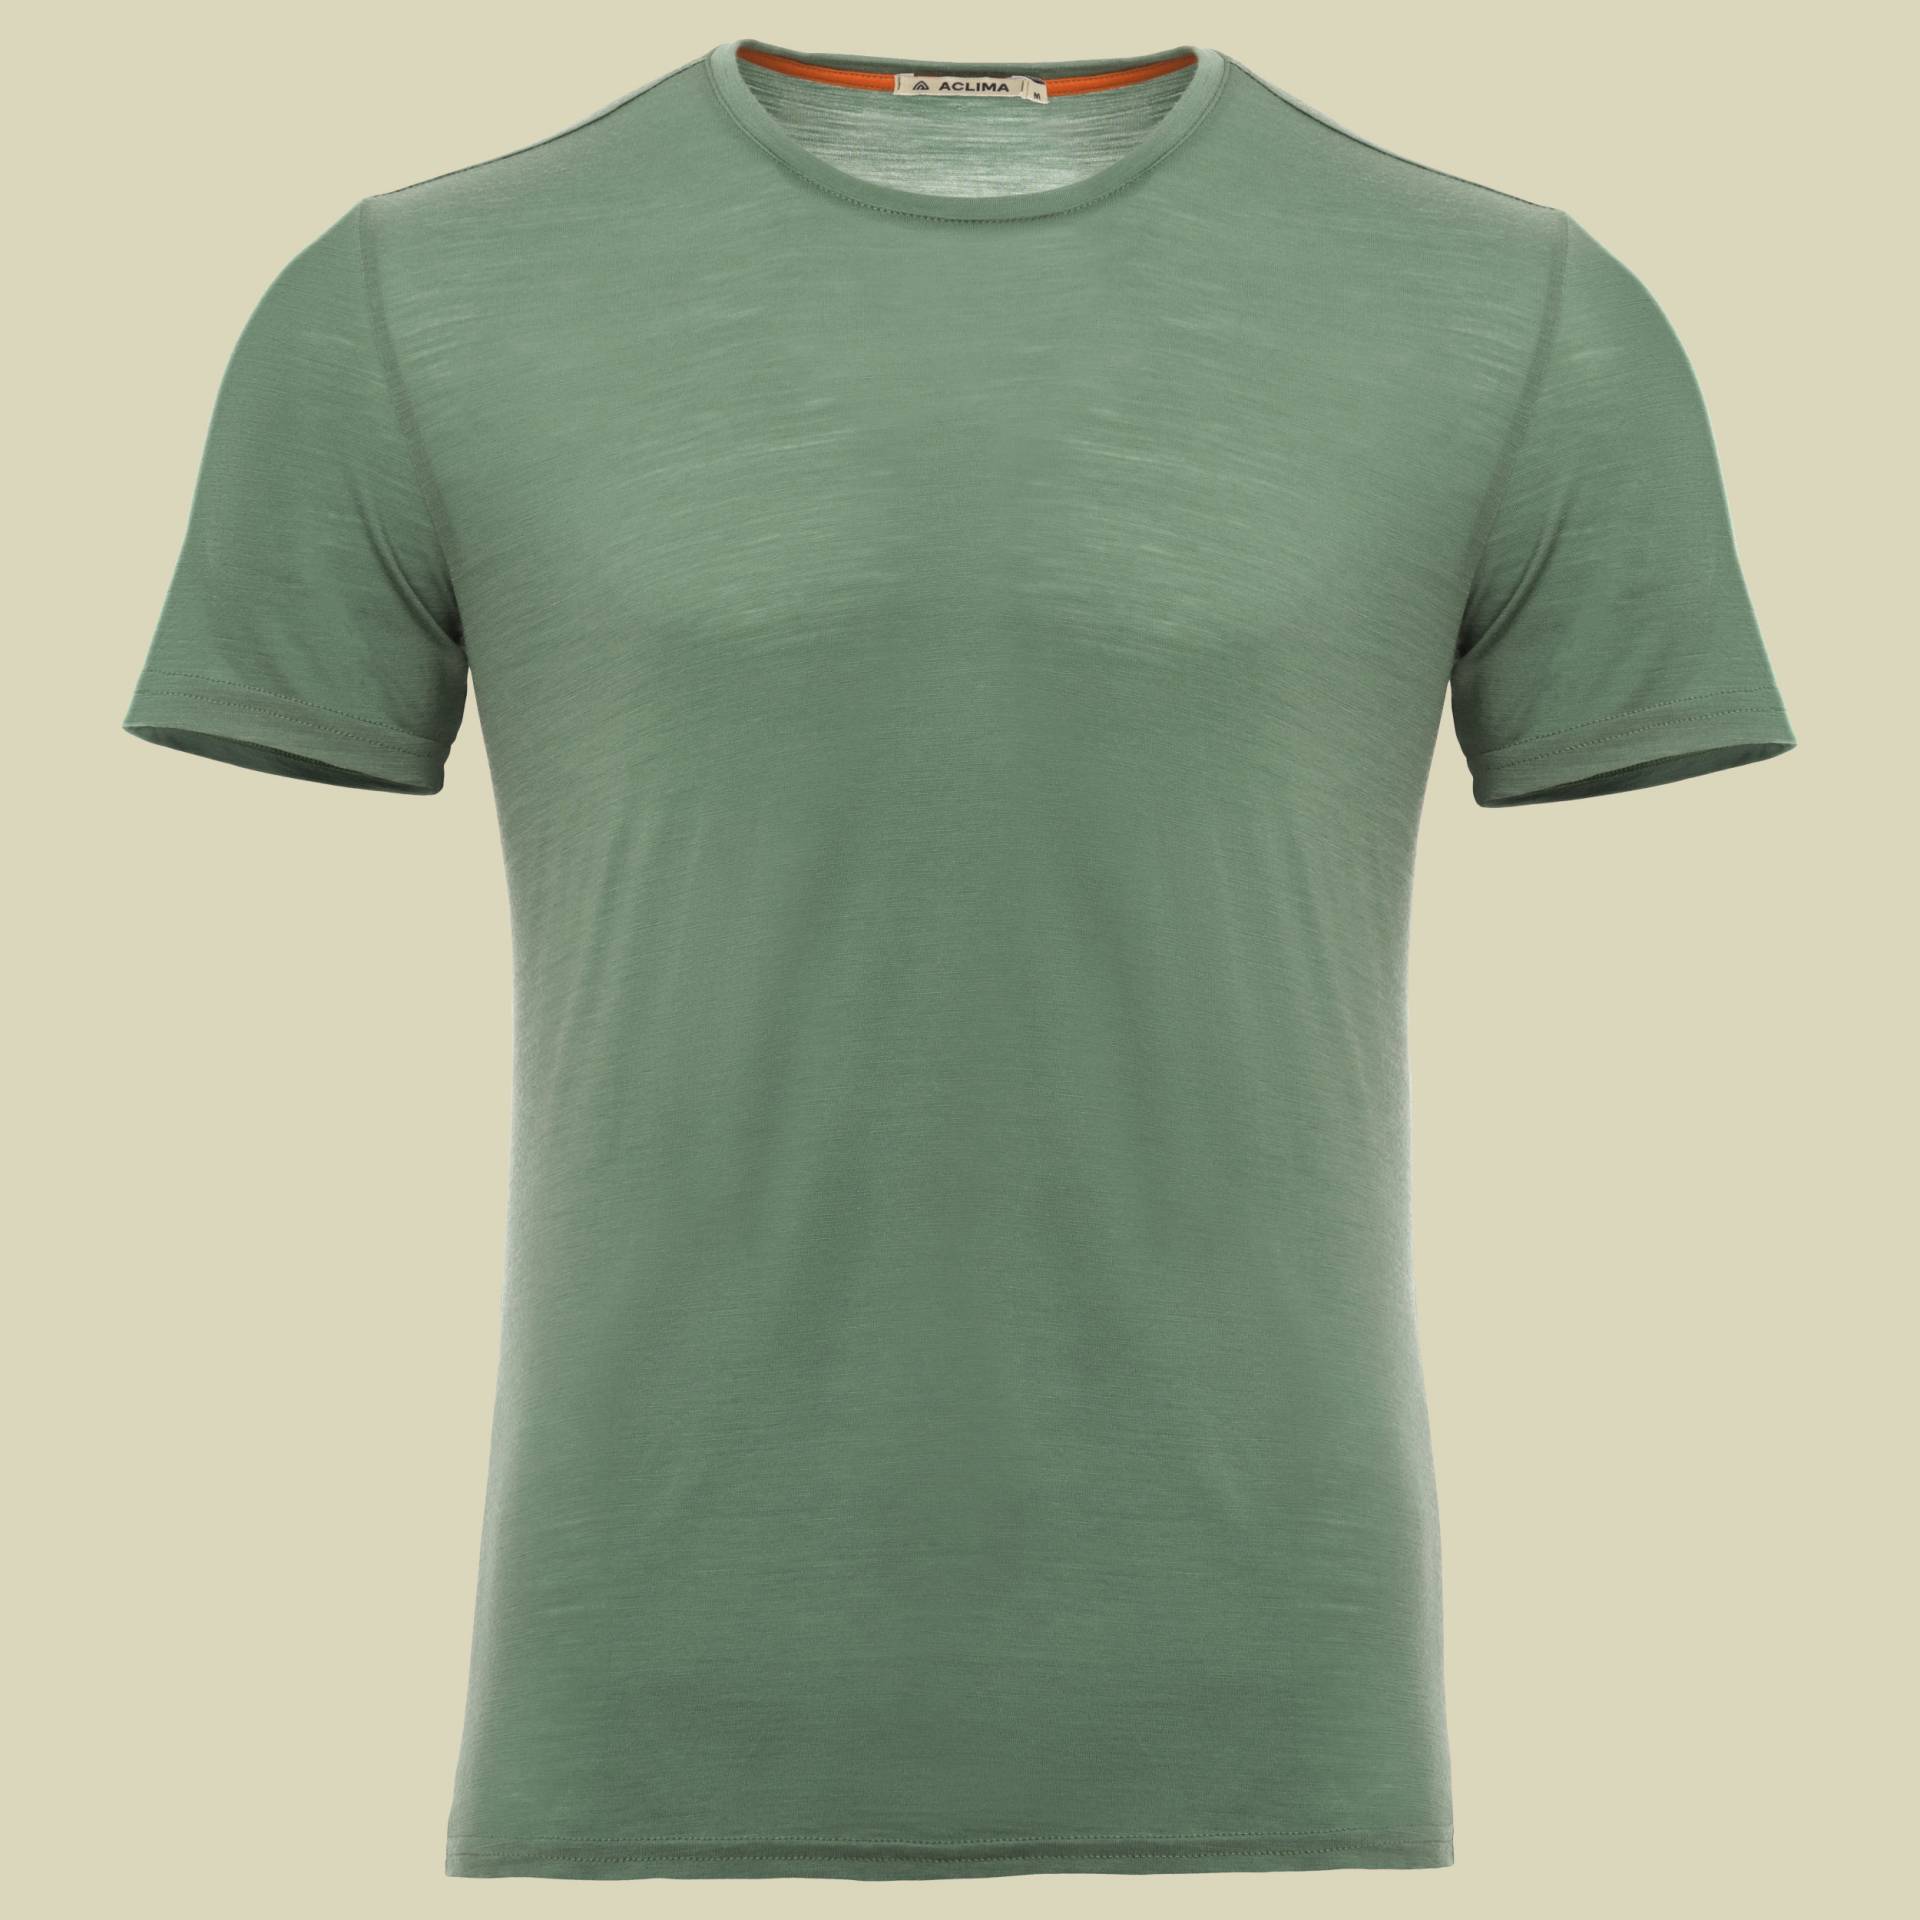 LightWool T-Shirt Men Größe XL Farbe dark ivy von aclima